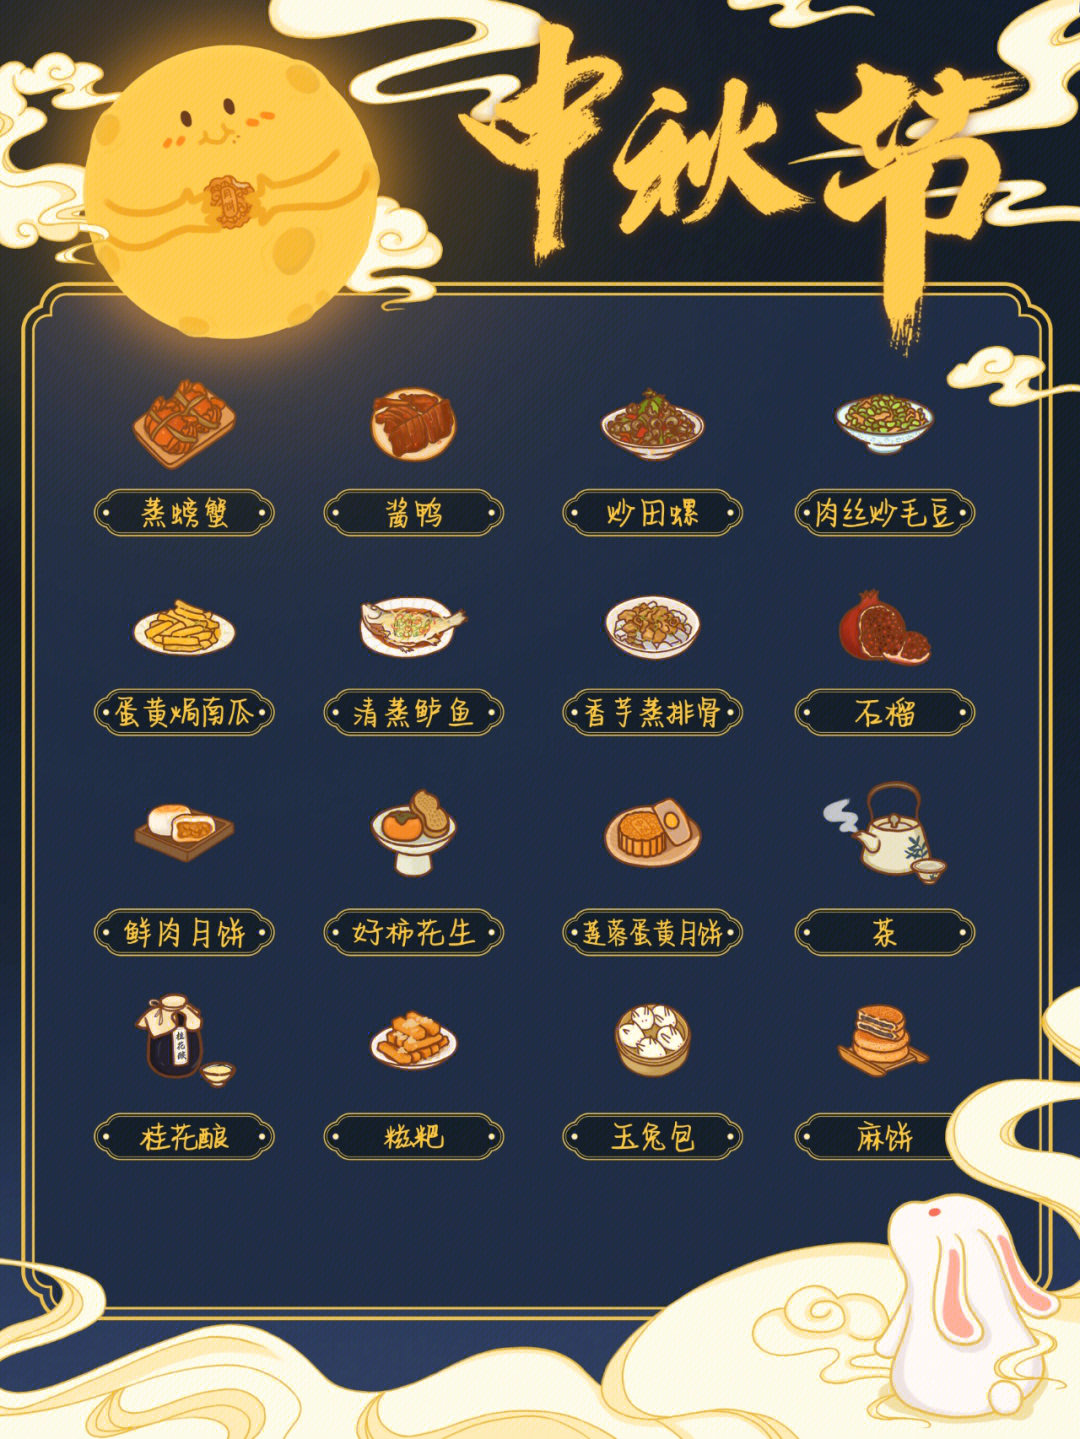 中秋节主题菜单图片